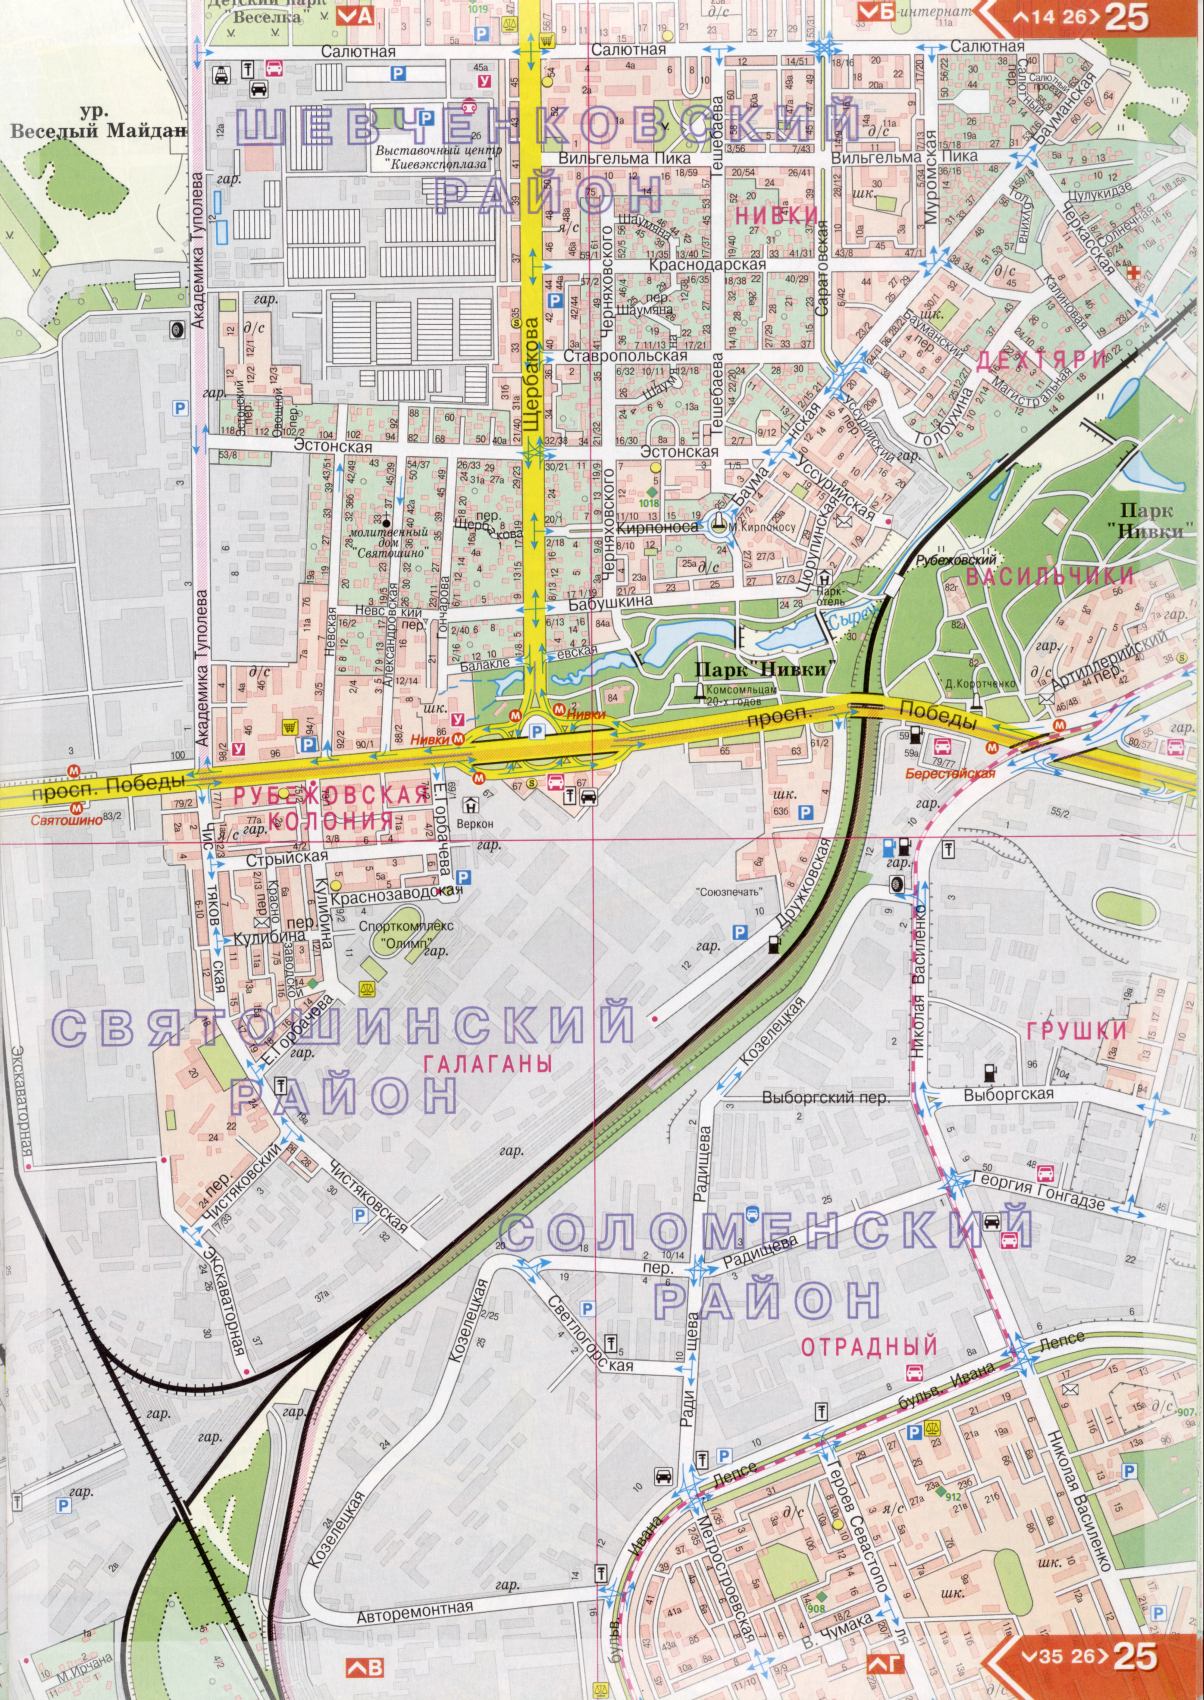 Kiev carte détails 1cm = 150m pour 45 feuilles. Carte de Kiev de l'atlas des routes. Télécharger une carte détaillée, B2 - Solomenskiy district de Kiev